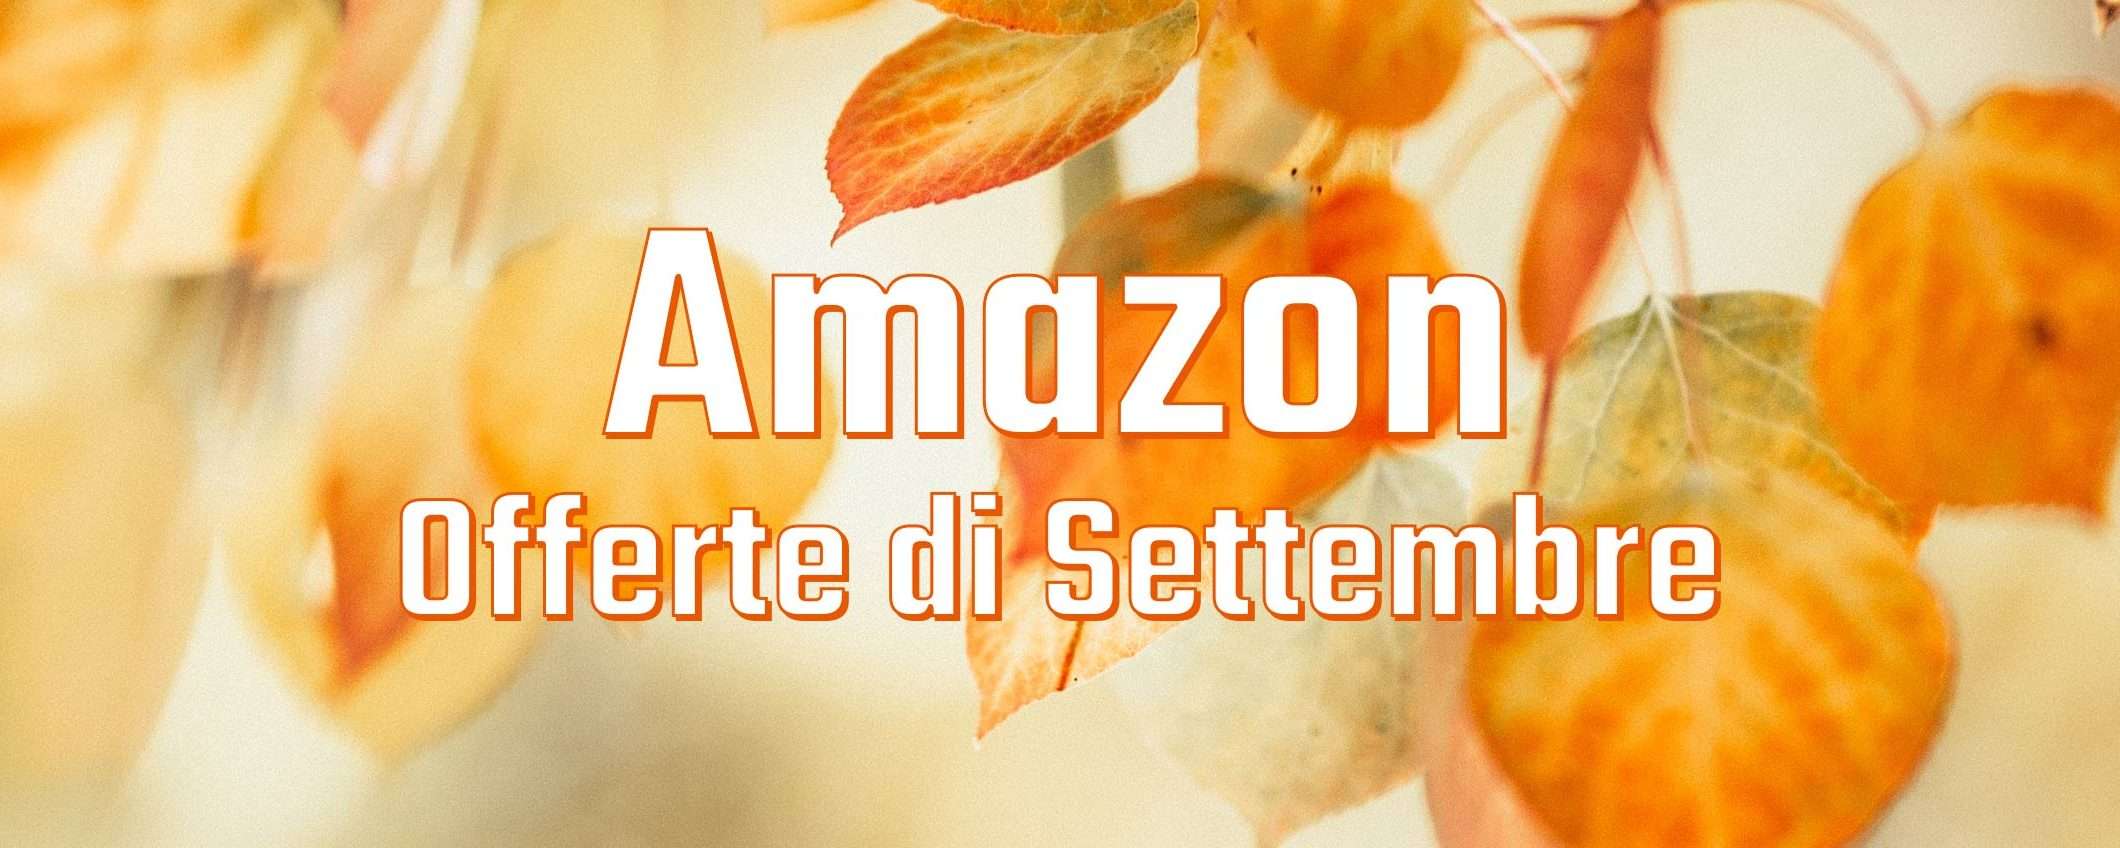 Offerte di Settembre Amazon: gli affari da non perdere oggi